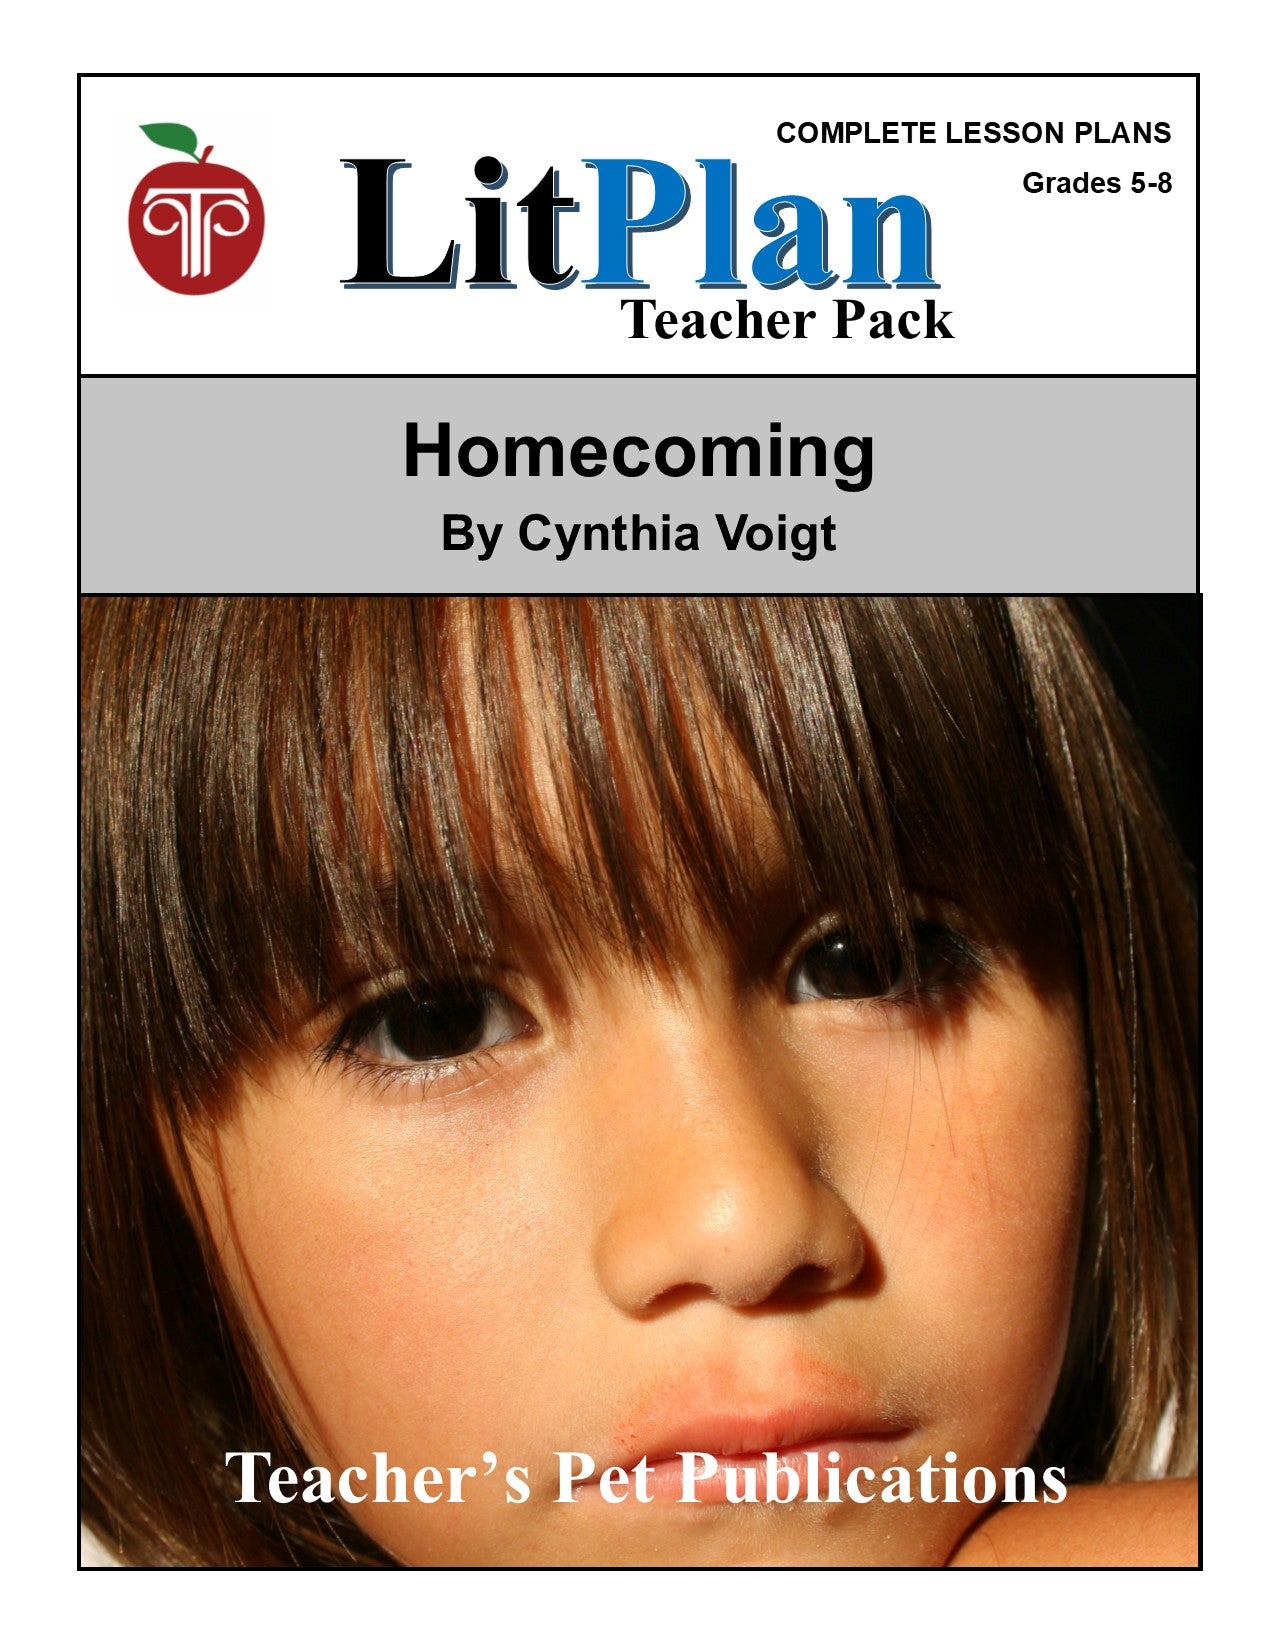 Homecoming: LitPlan Teacher Pack Grades 5-8